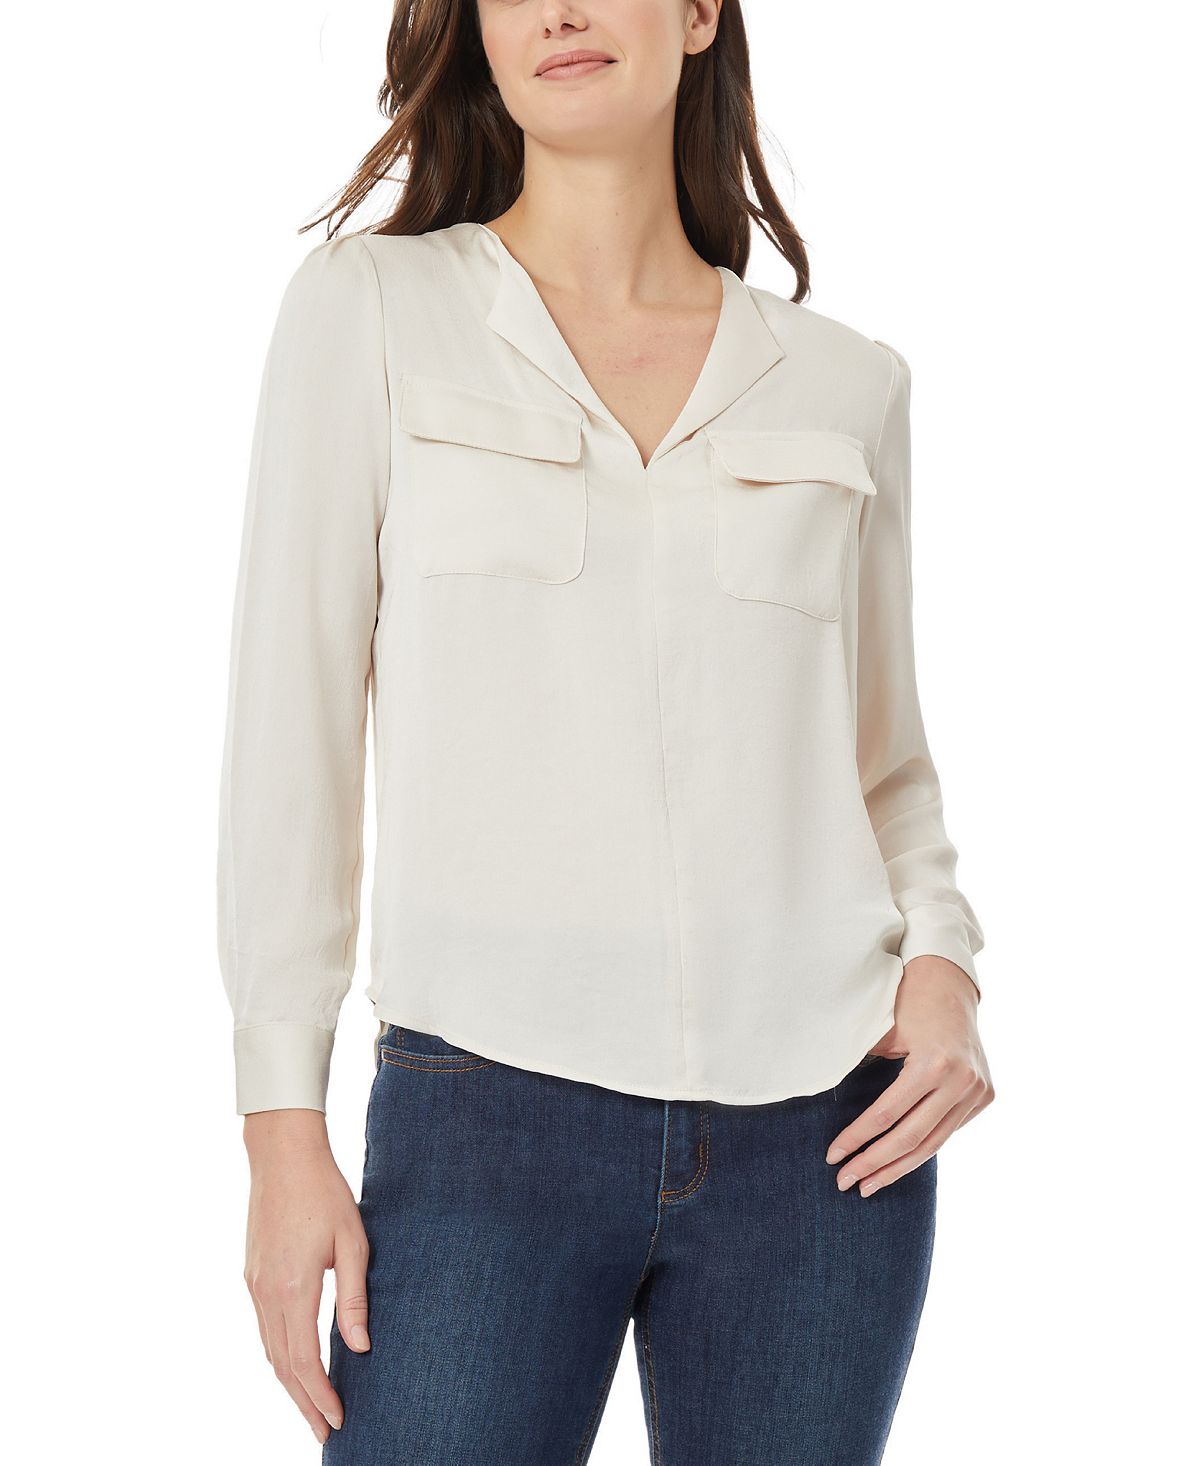 Женская упрощенная блузка в деловом стиле Jones New York